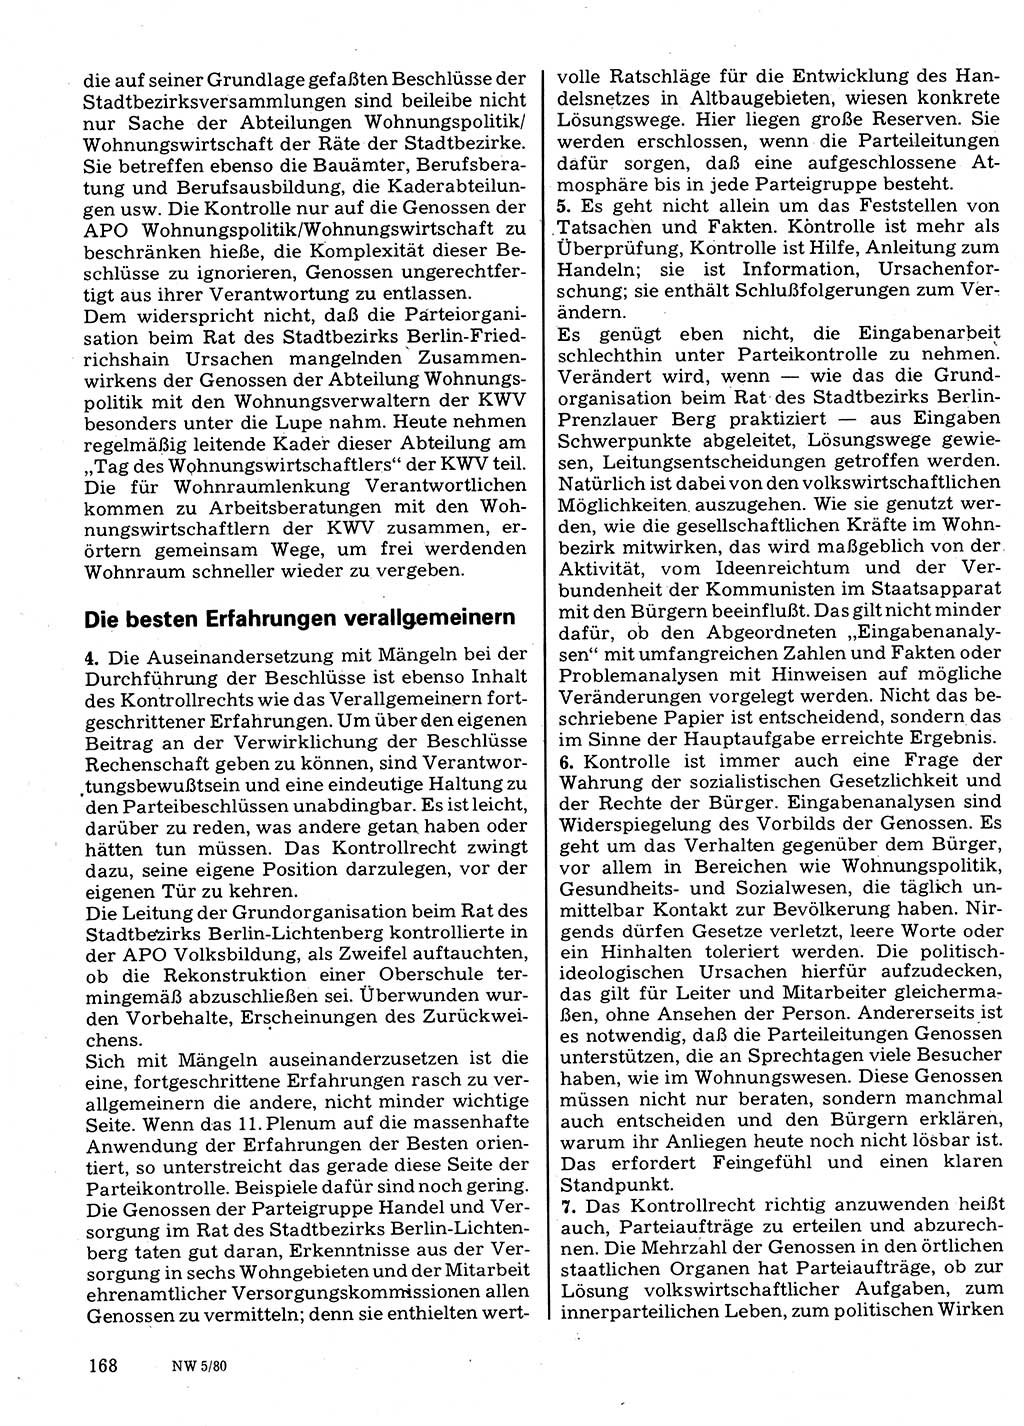 Neuer Weg (NW), Organ des Zentralkomitees (ZK) der SED (Sozialistische Einheitspartei Deutschlands) für Fragen des Parteilebens, 35. Jahrgang [Deutsche Demokratische Republik (DDR)] 1980, Seite 168 (NW ZK SED DDR 1980, S. 168)